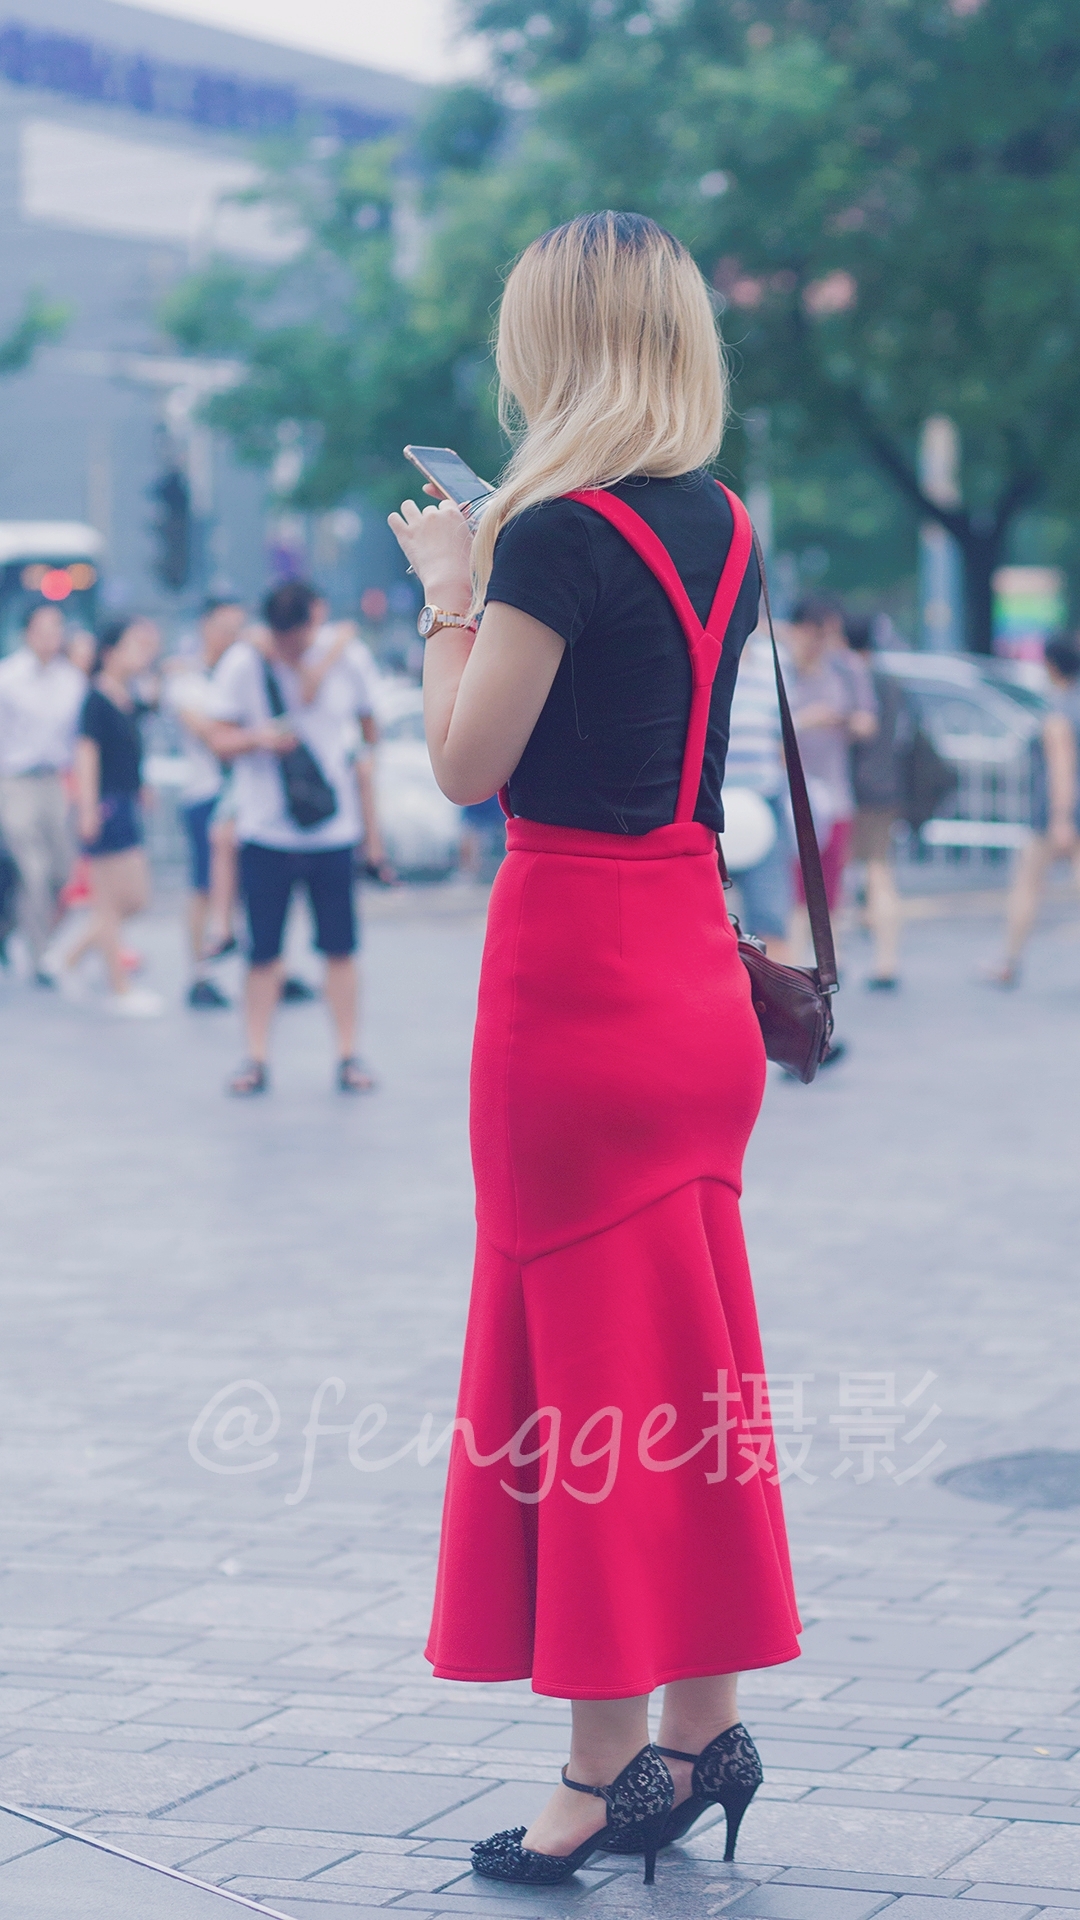 街拍:偶遇穿红色背带裙的美女,她那微胖的身材